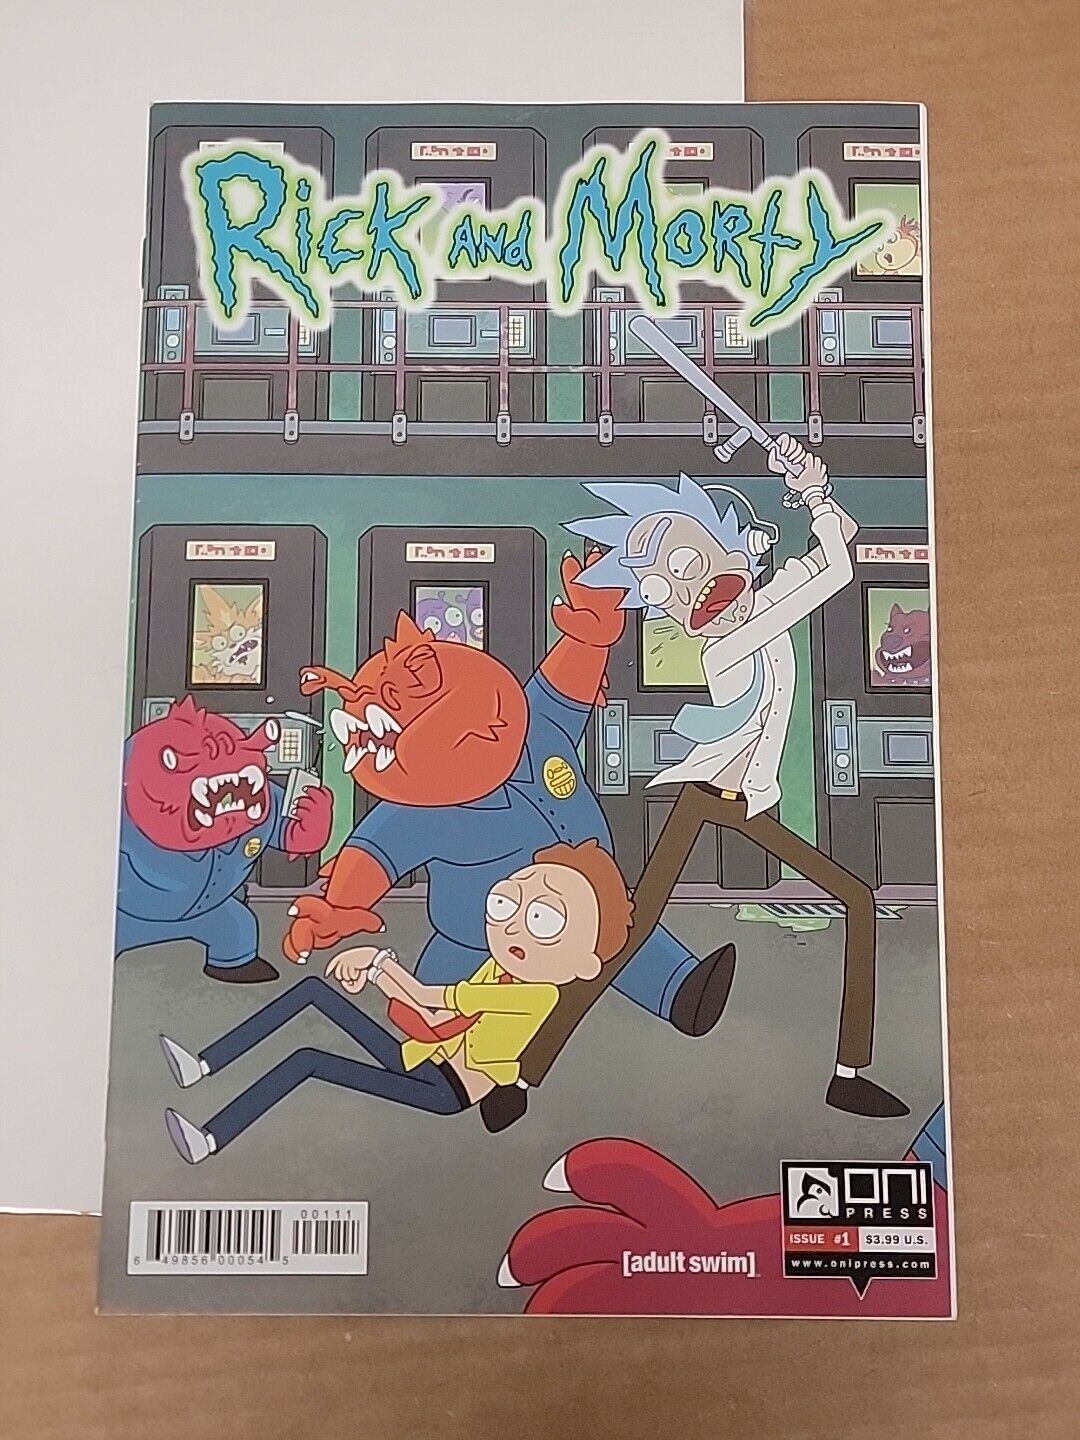 RICK & MORTY #1 1st Printing ONI 2015 Rick and Morty